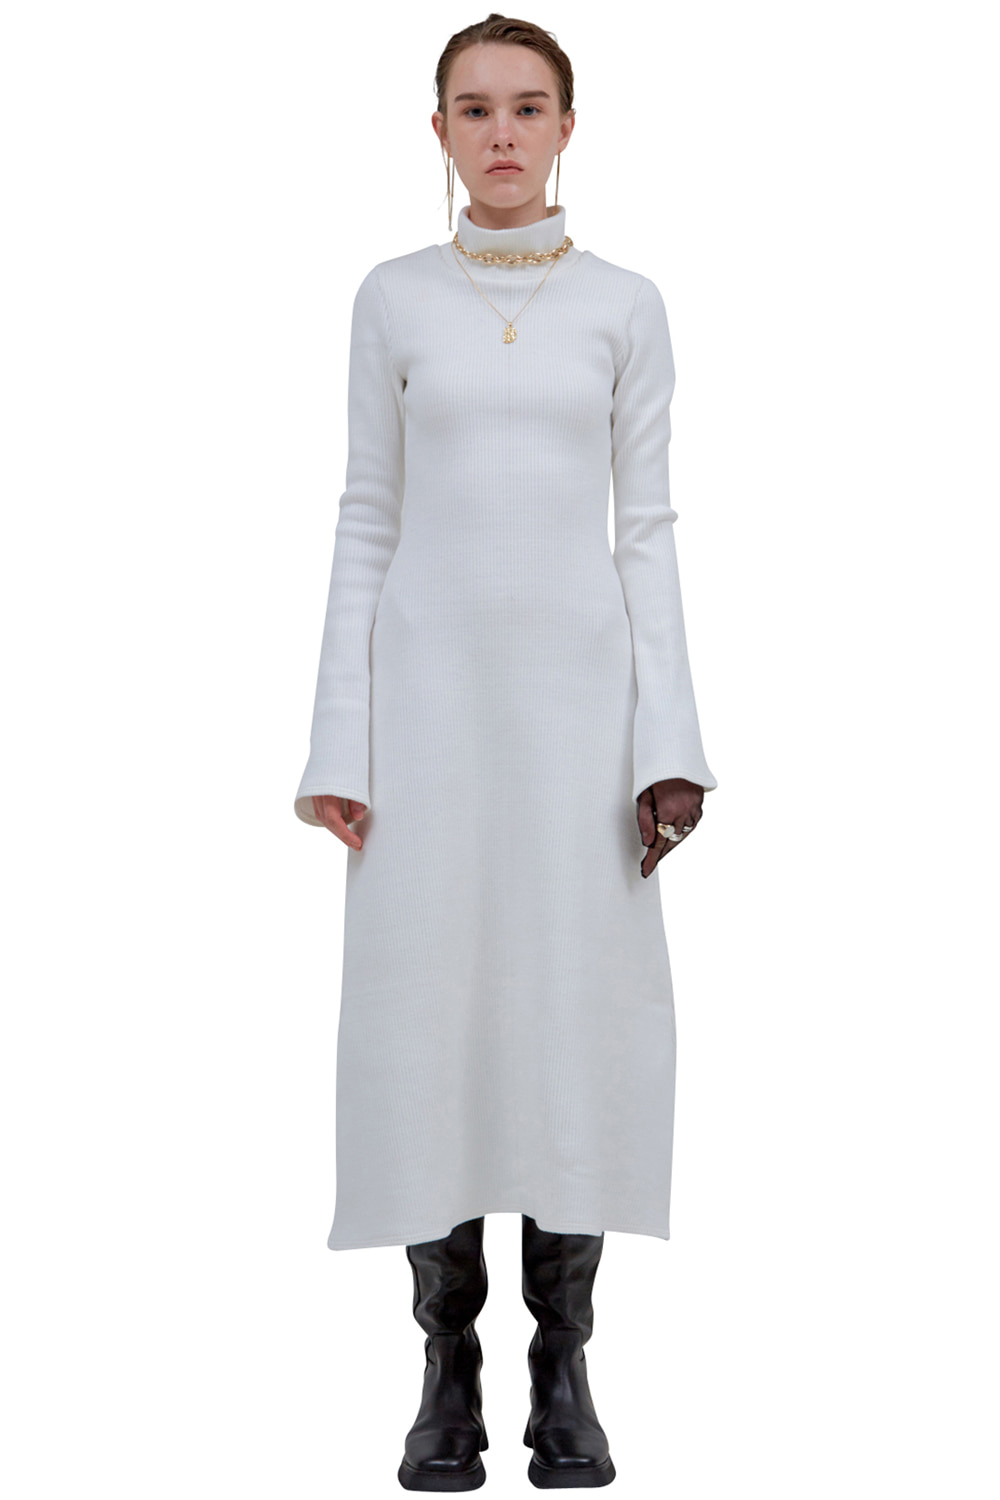 WHITE LONG KNIT DRESS